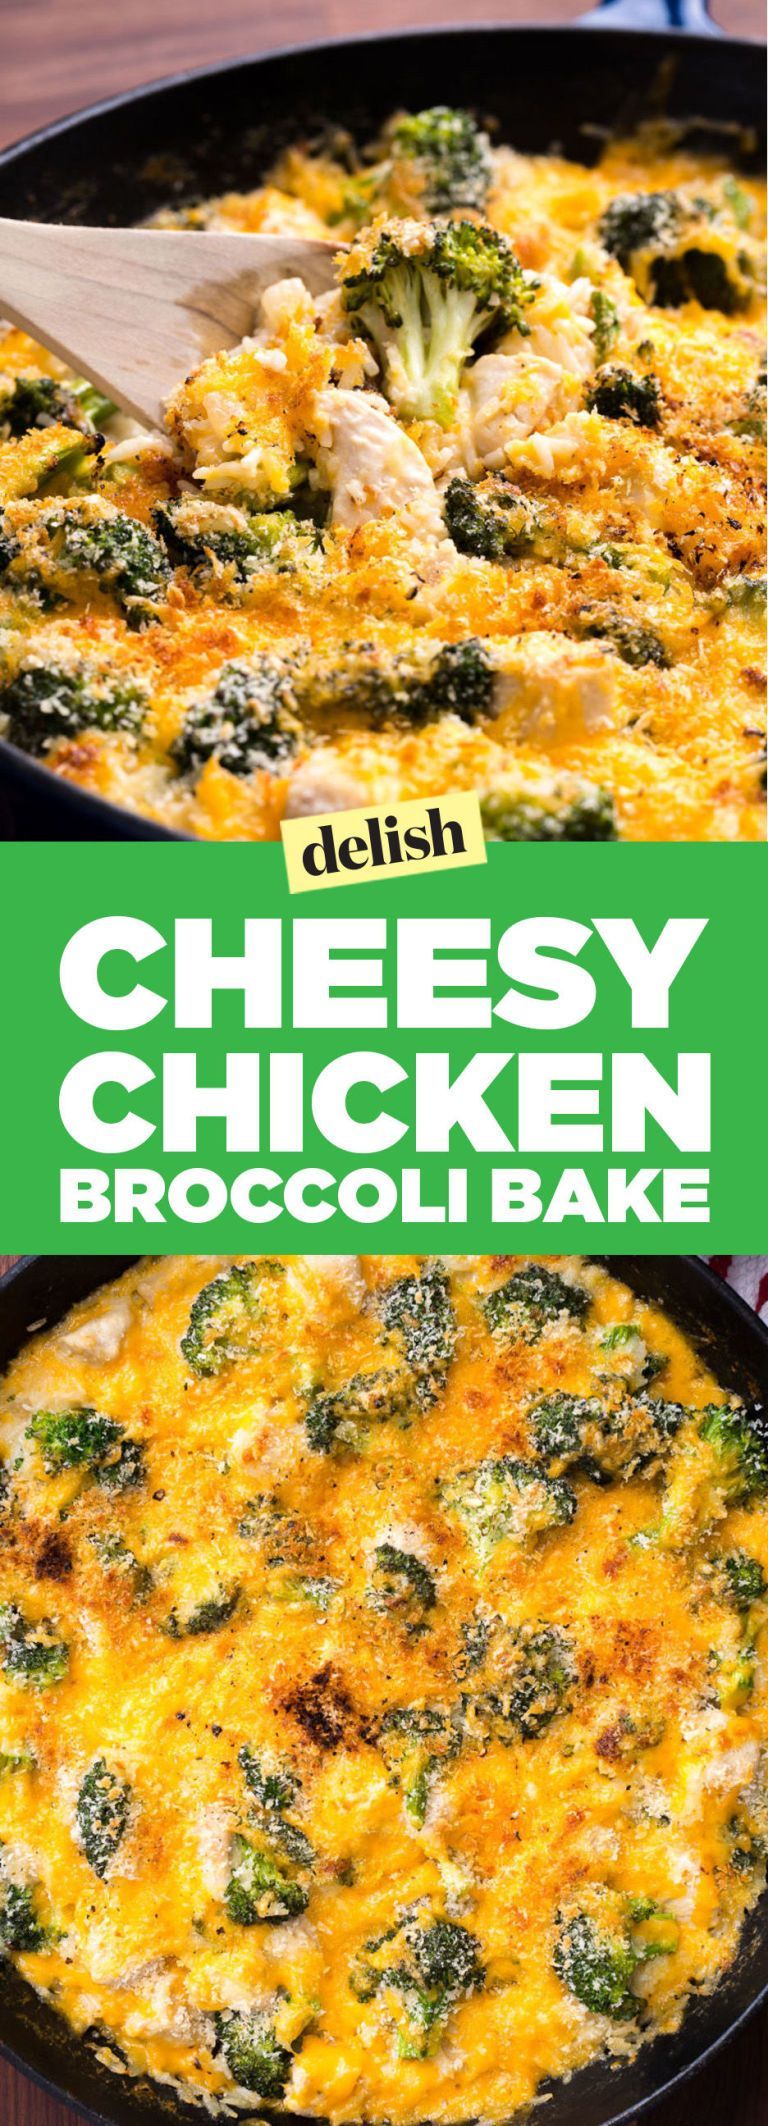 23 cheesy chicken recipes
 ideas